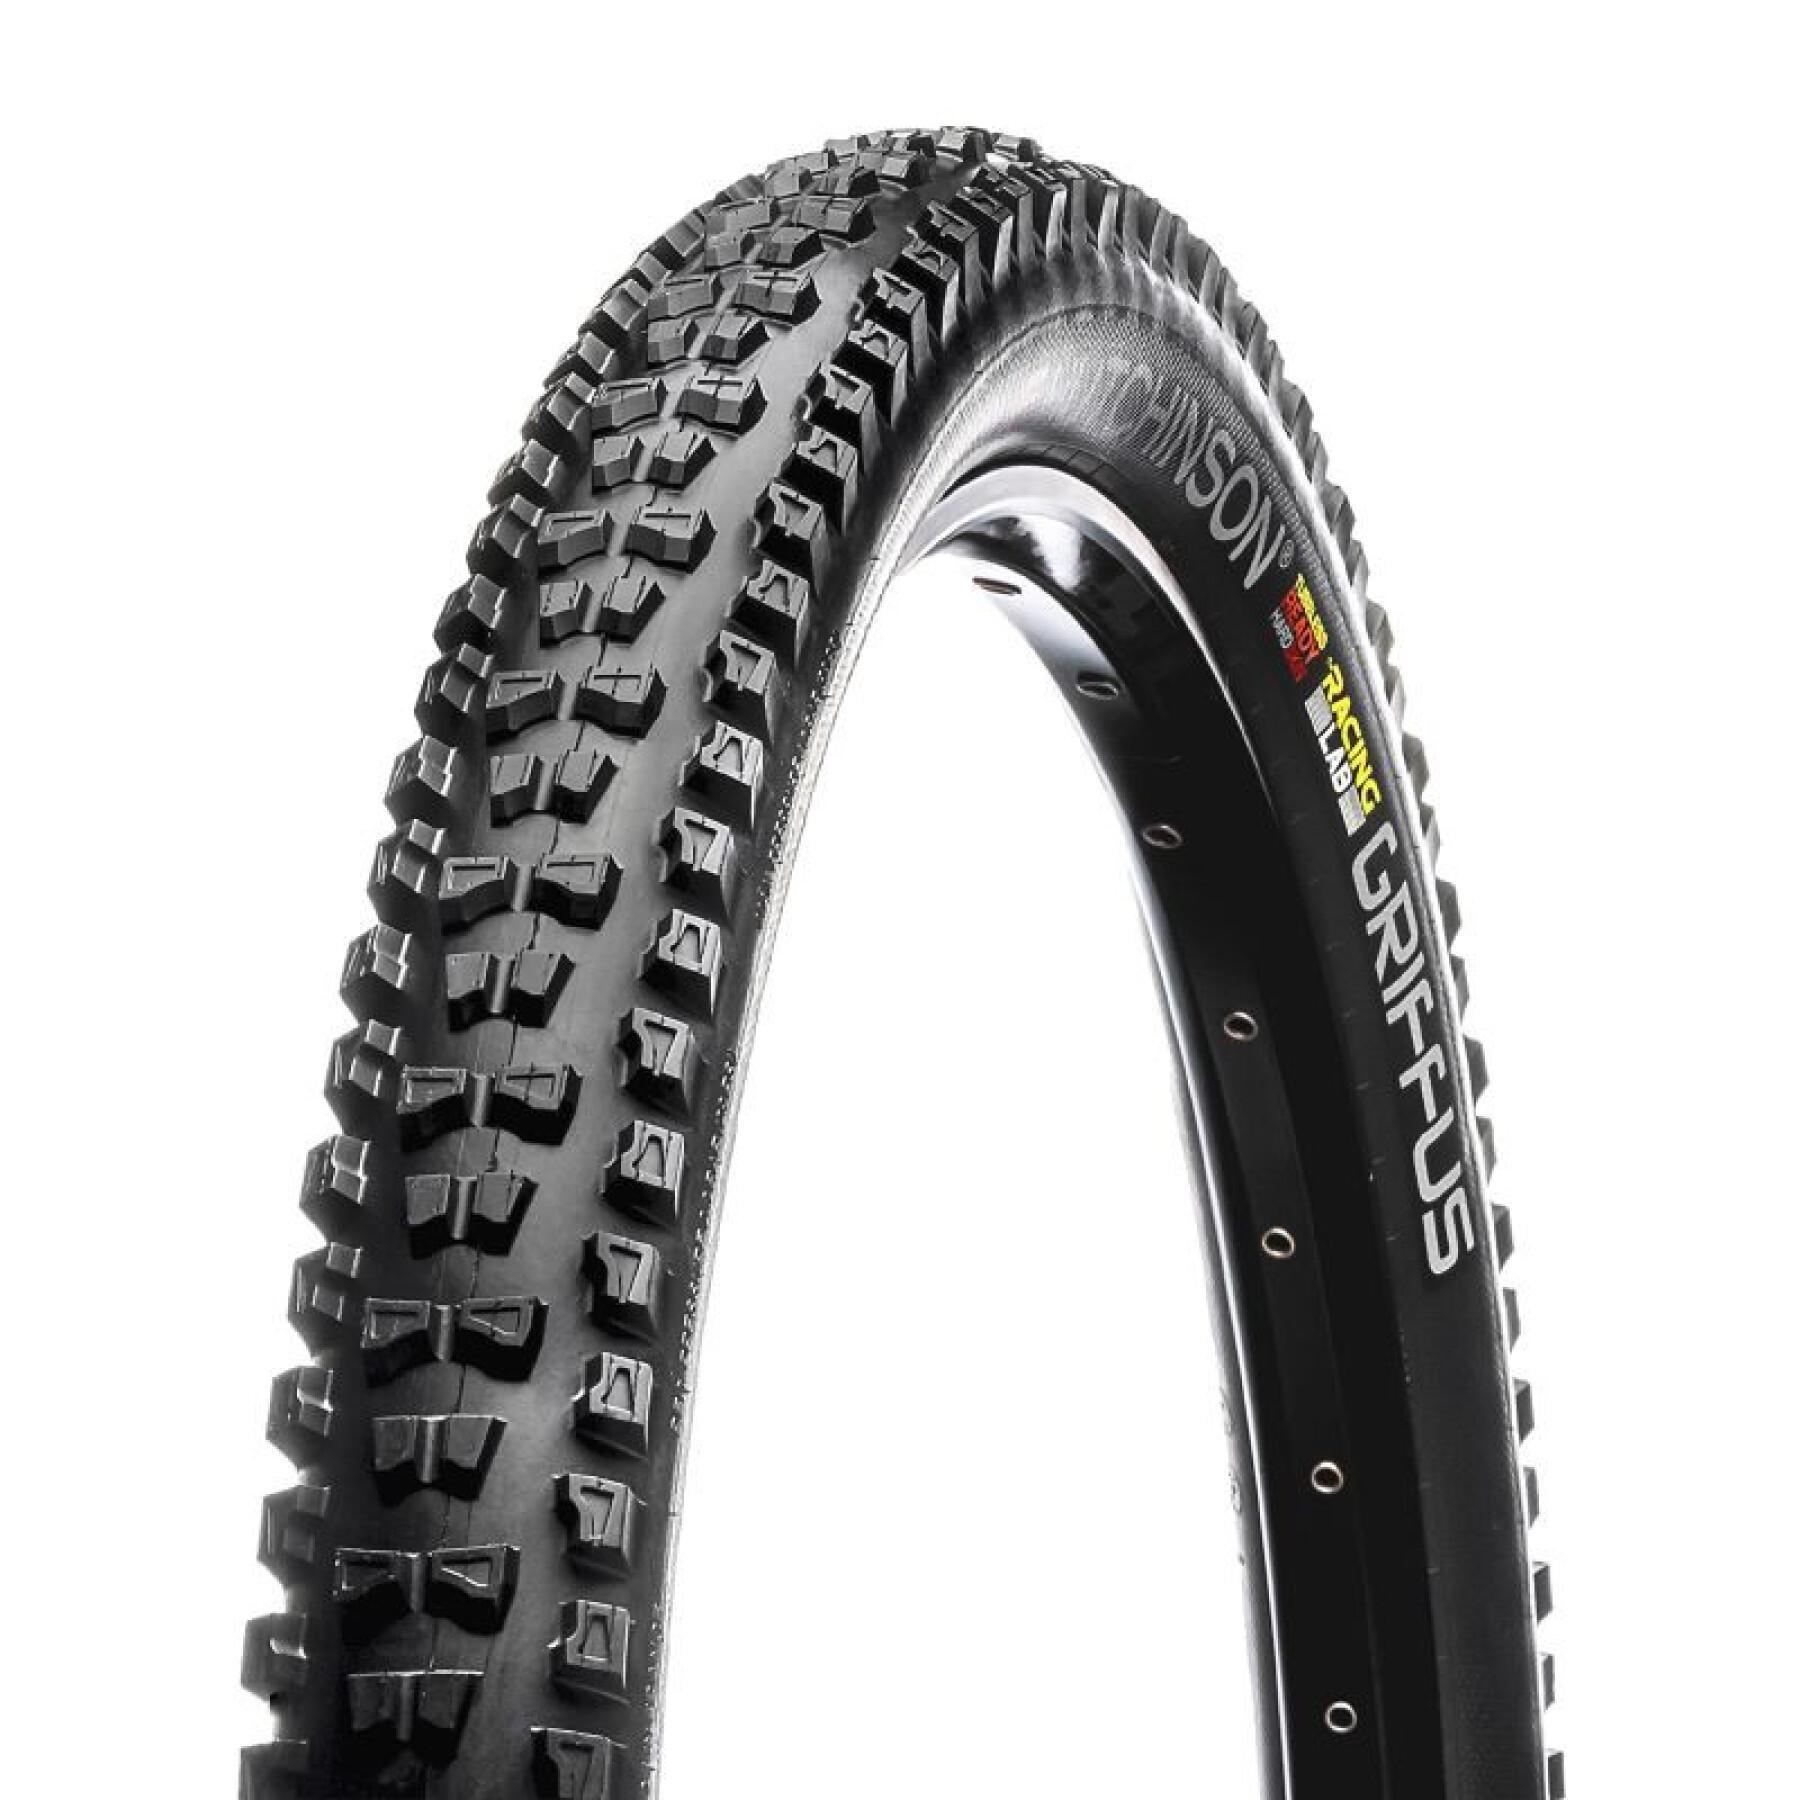 Neumático de bicicleta de montaña Hutchinson griffus racing lab TS tubetype-tubeless ready VAE